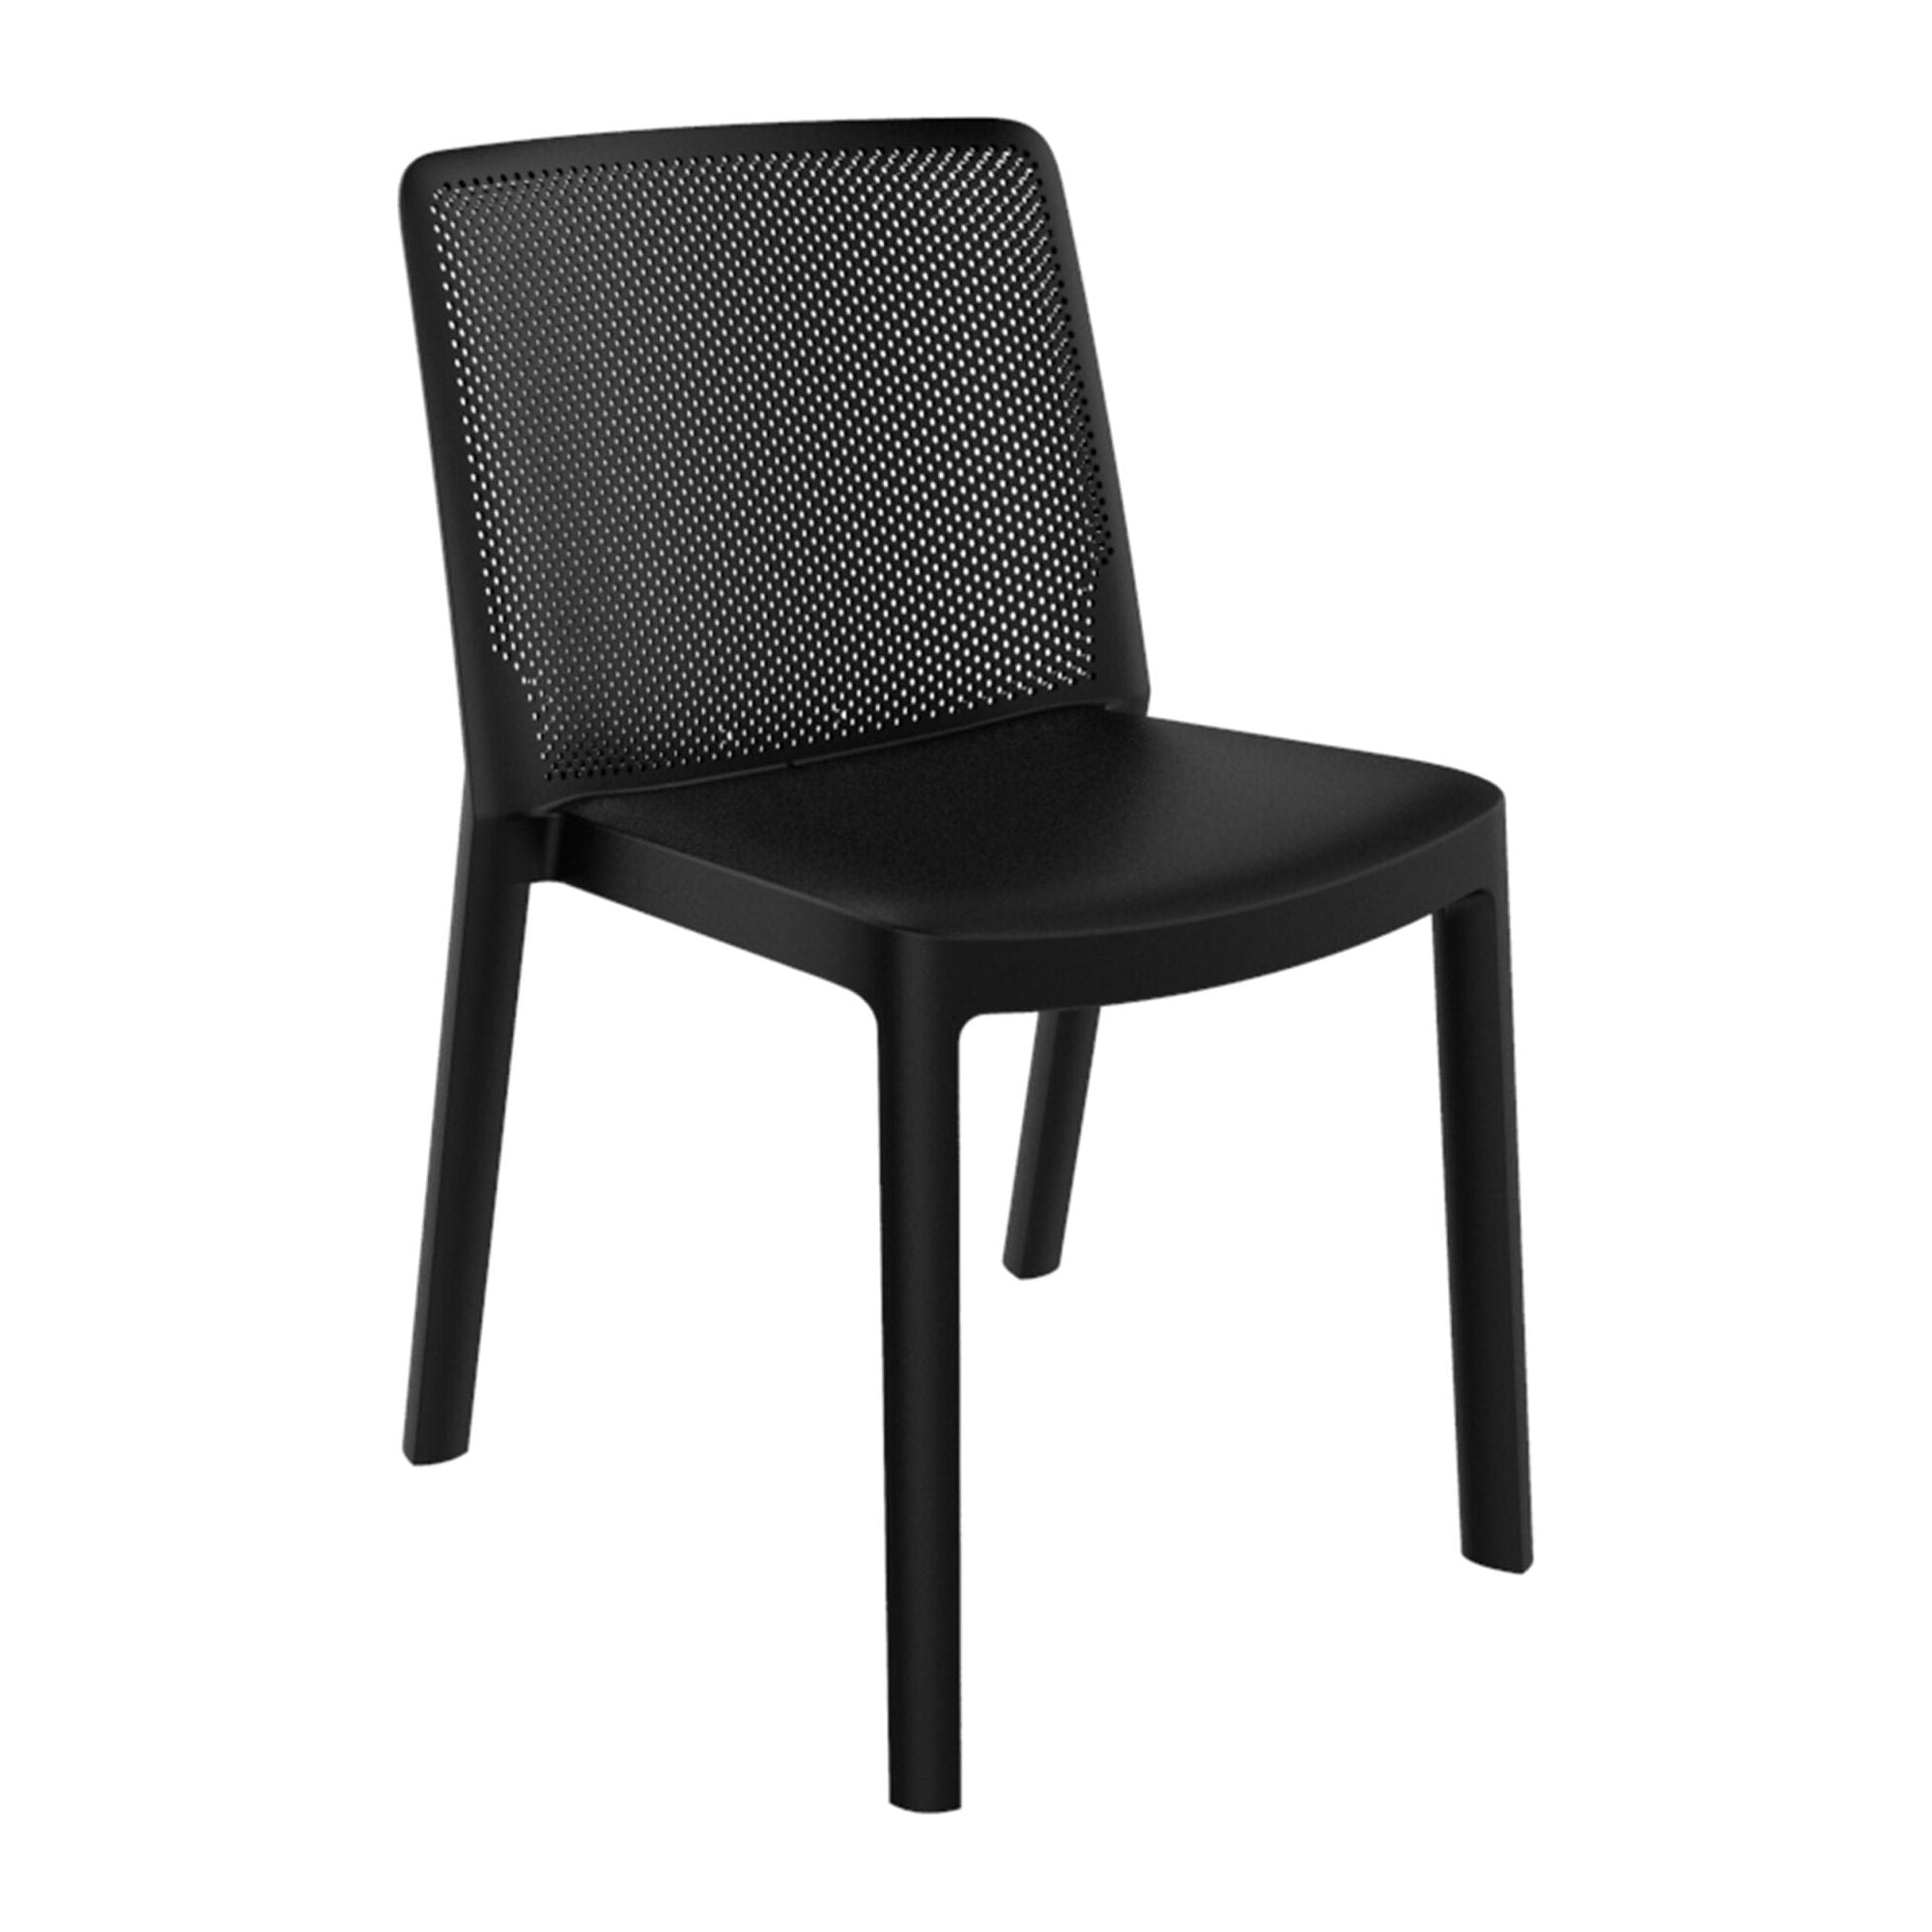 Garbar fresh chair inside, black outside